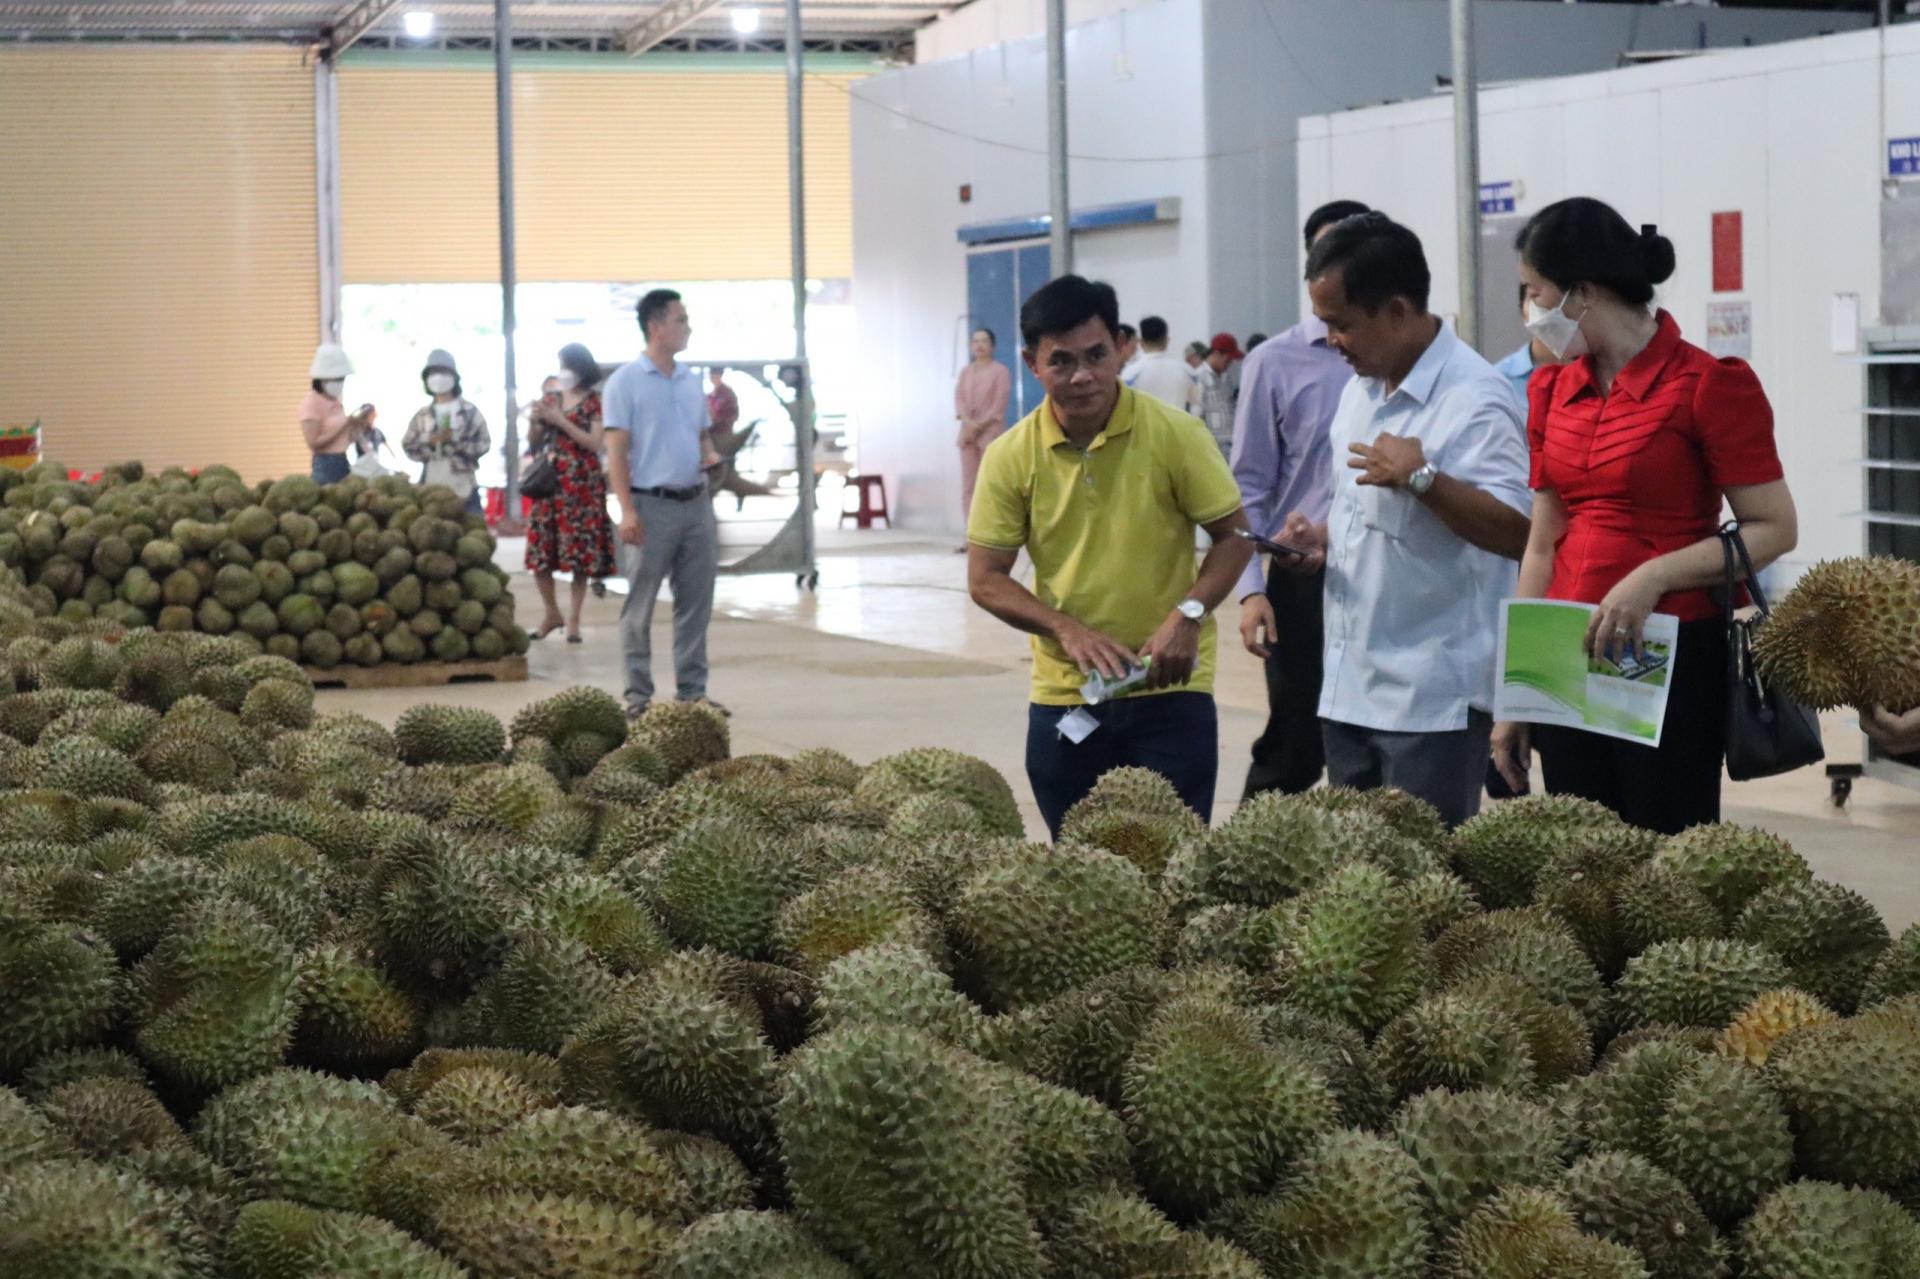 Trung Quốc chi 10,3 tỷ USD mua trái cây, Việt Nam chiếm 9,5% trong số này - Ảnh 1.